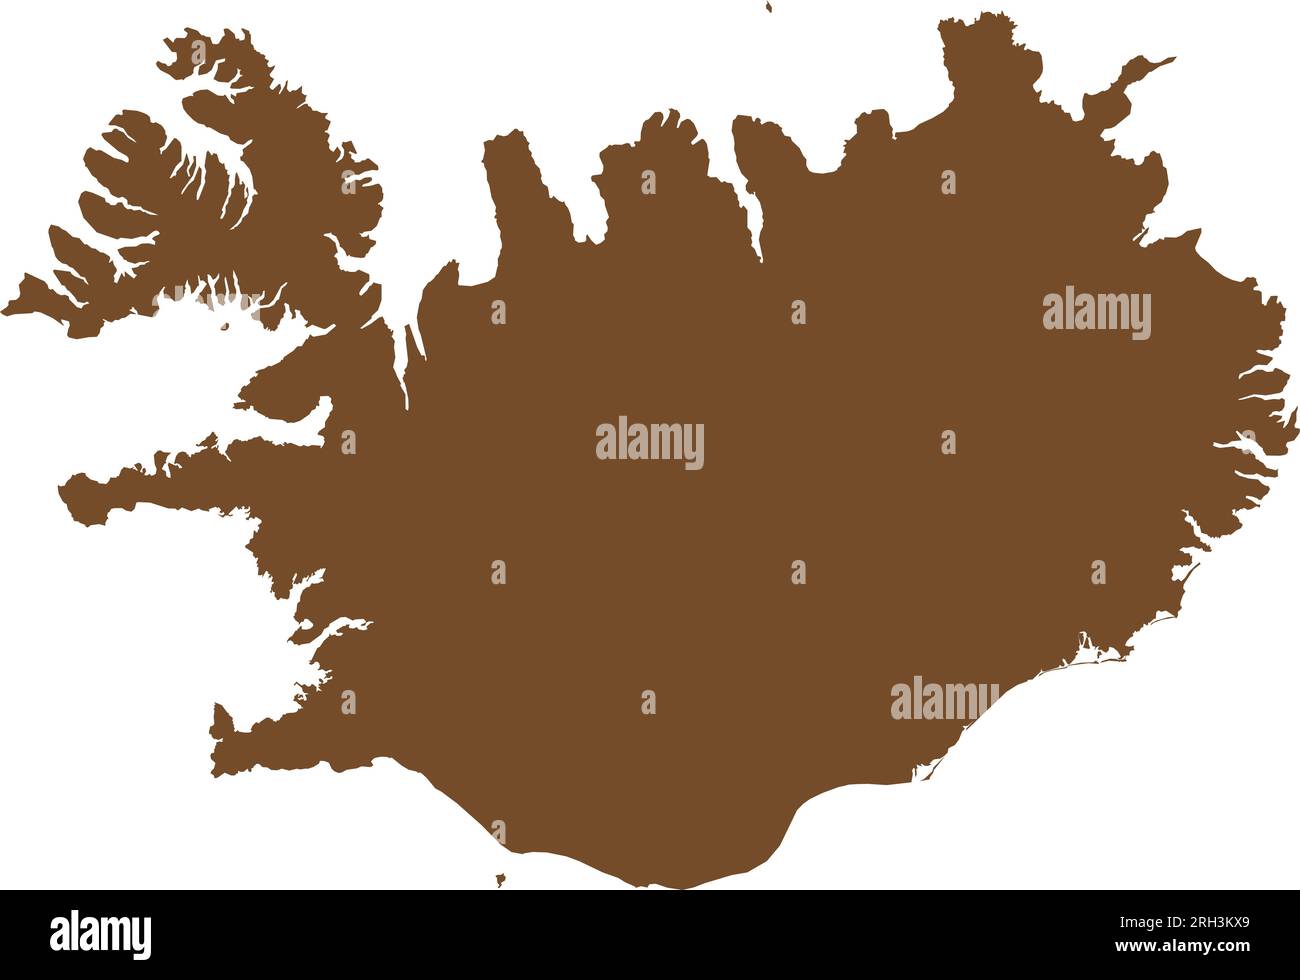 Mappa colore MARRONE CMYK dell'ISLANDA Illustrazione Vettoriale